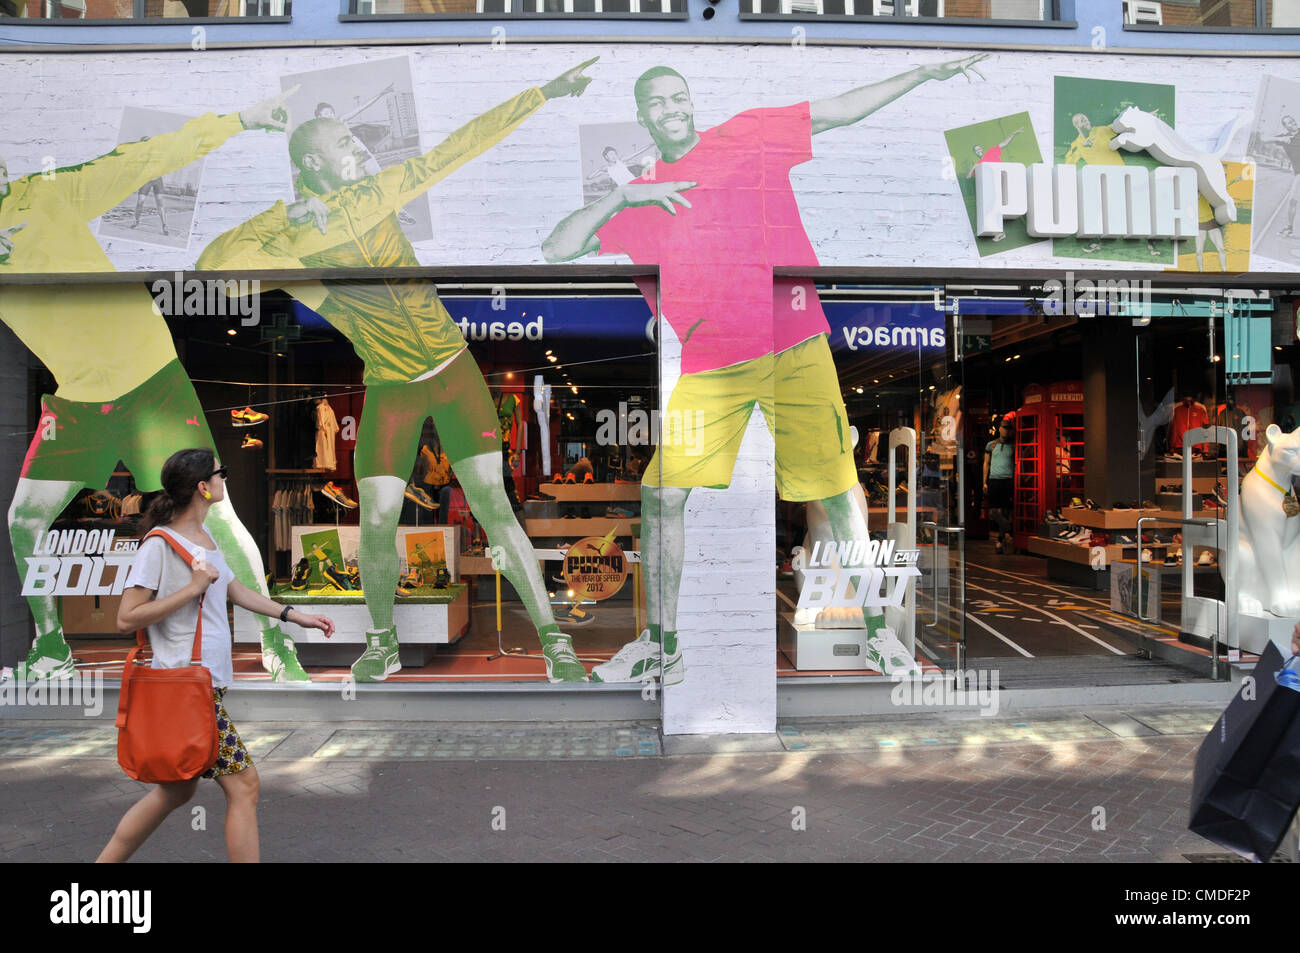 Carnaby Street, London, UK. 24. Juli 2012. Der Puma Store verwendet eine Usain Bolt-Thema, wie viele Geschäfte im Zentrum von London eine olympische haben und Sport-Themen, einige vermeiden den Einsatz von 2012 Logo und Formulierung wegen strengen branding Fragen. Stockfoto